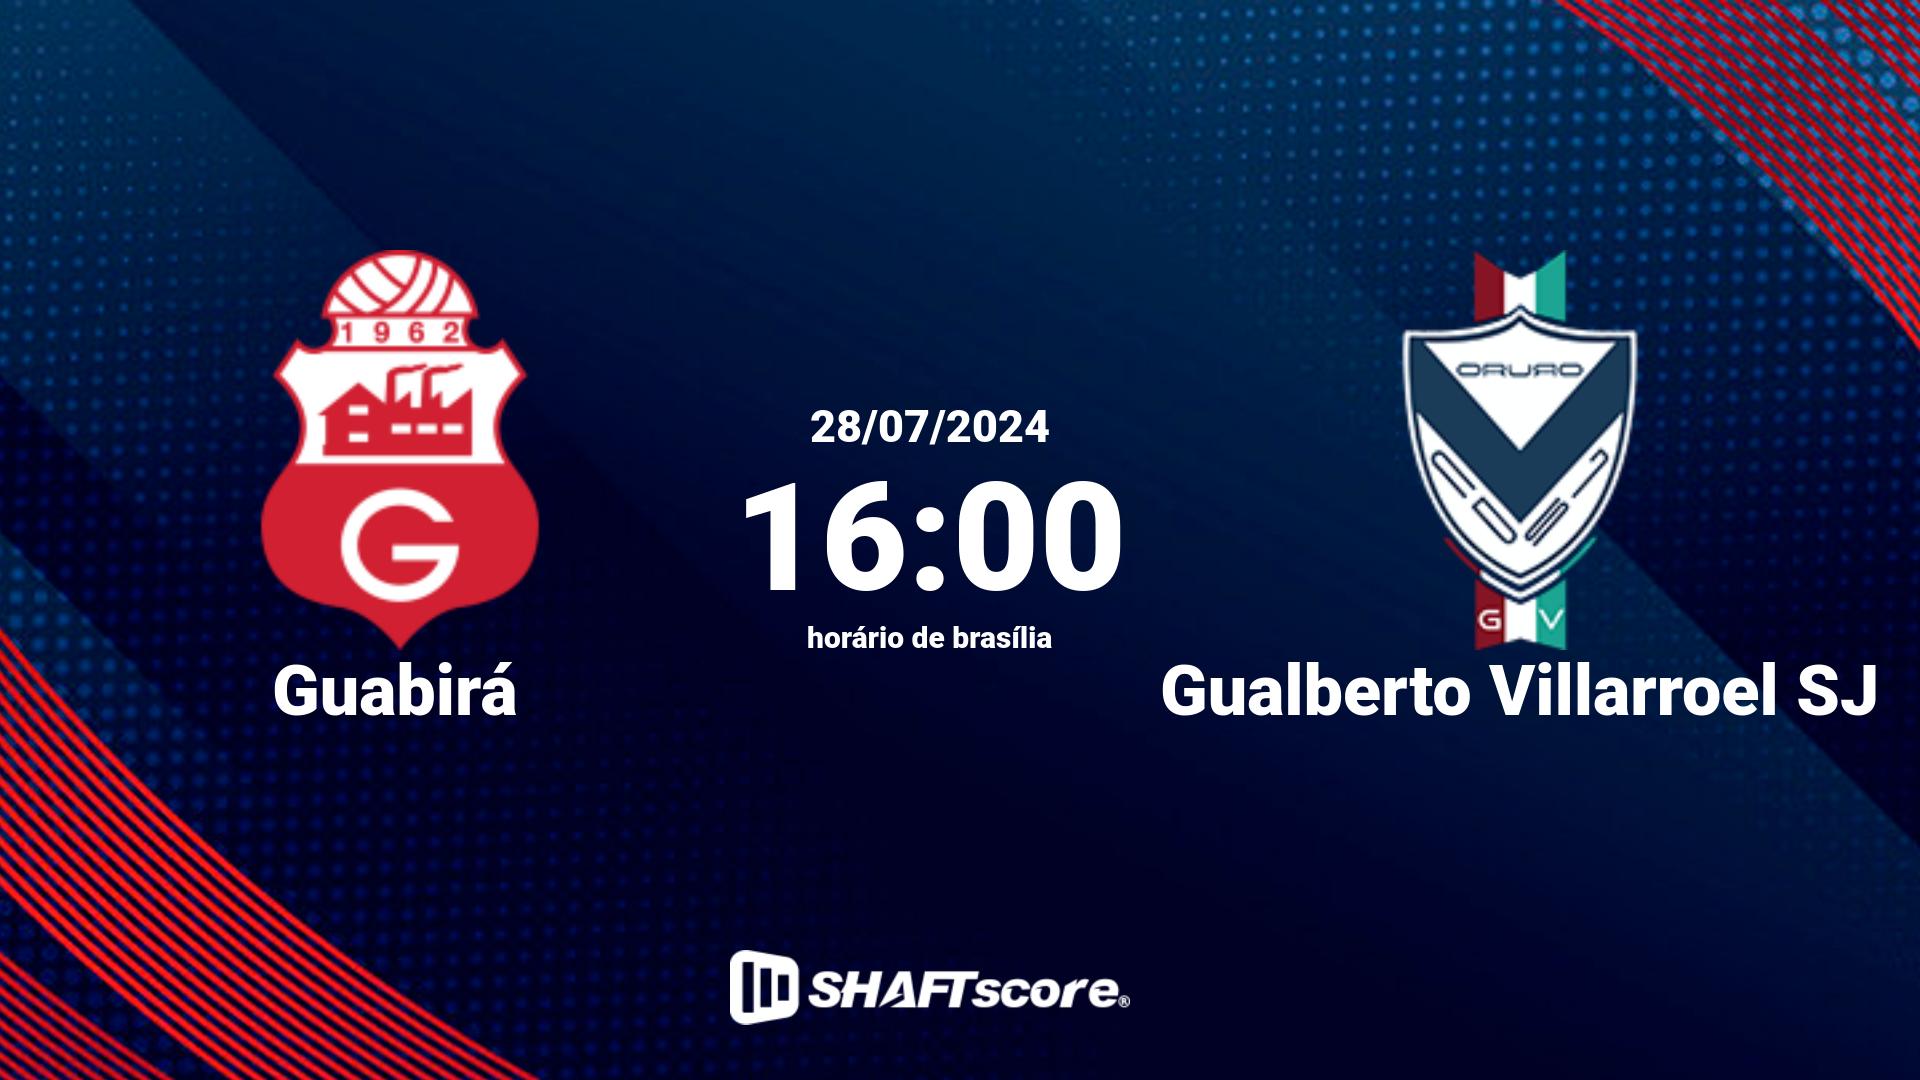 Estatísticas do jogo Guabirá vs Gualberto Villarroel SJ 28.07 16:00